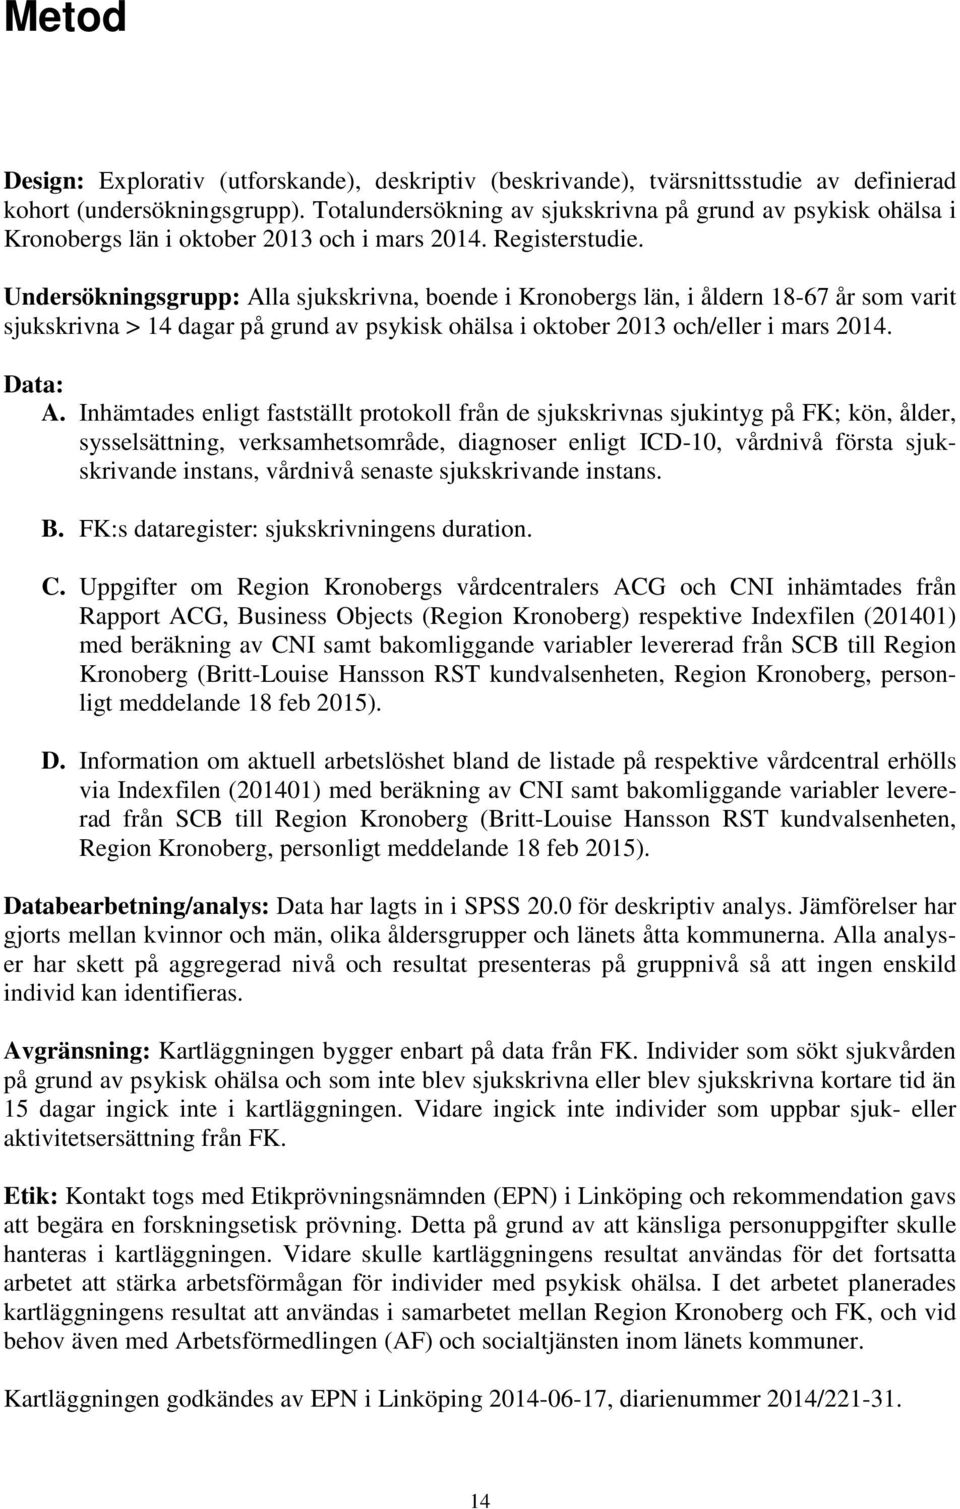 Undersökningsgrupp: Alla sjukskrivna, boende i Kronobergs län, i åldern 18-67 år som varit sjukskrivna > 14 dagar på grund av psykisk ohälsa i oktober 2013 och/eller i mars 2014. Data: A.